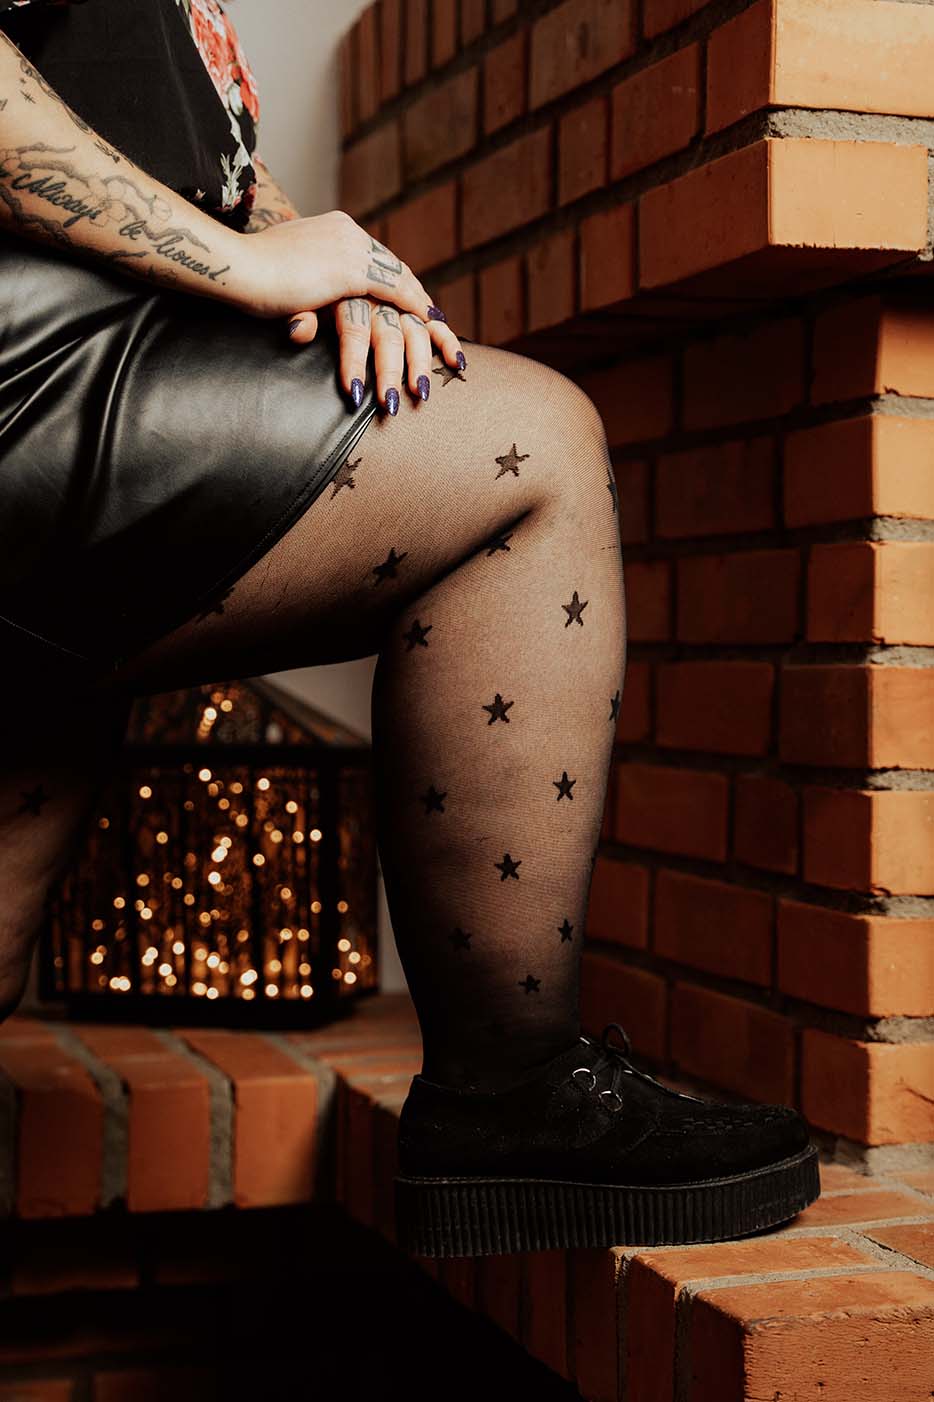 Plus Size Strumpfhose mit Sternen an Bein mit Lipödem, das aufgestützt auf einem Kaminsims steht.